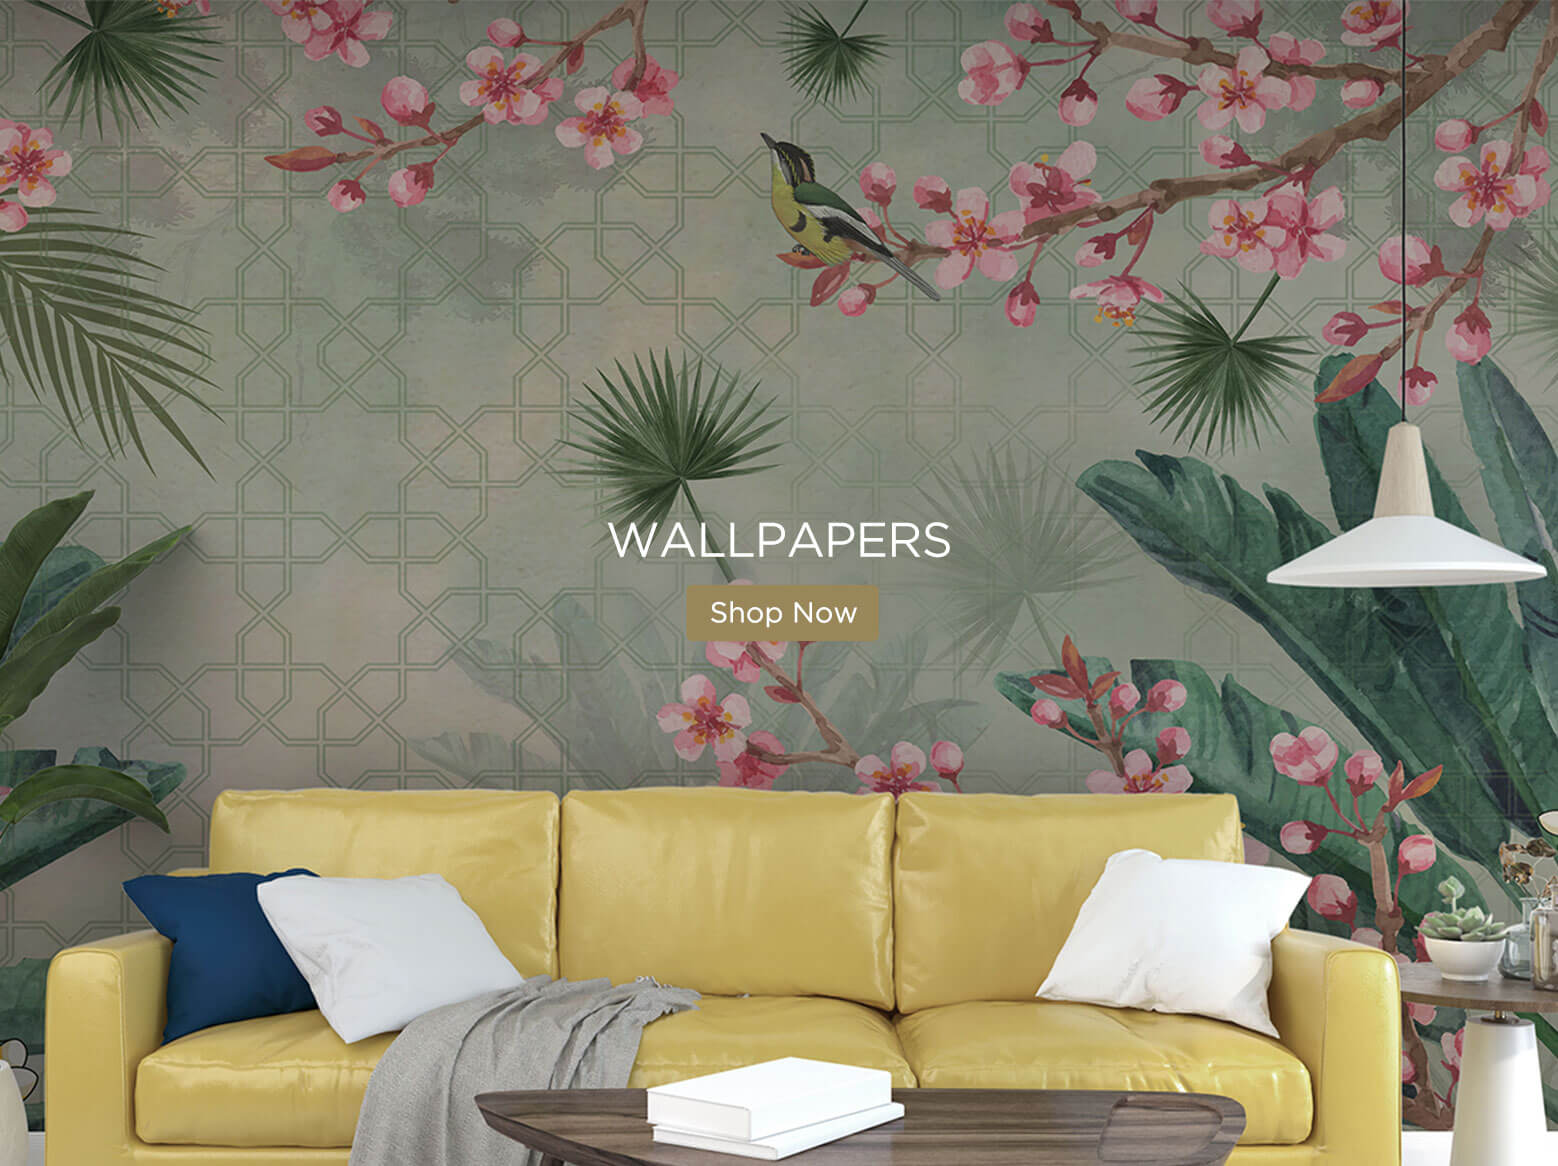 Buy Wallpapers Online